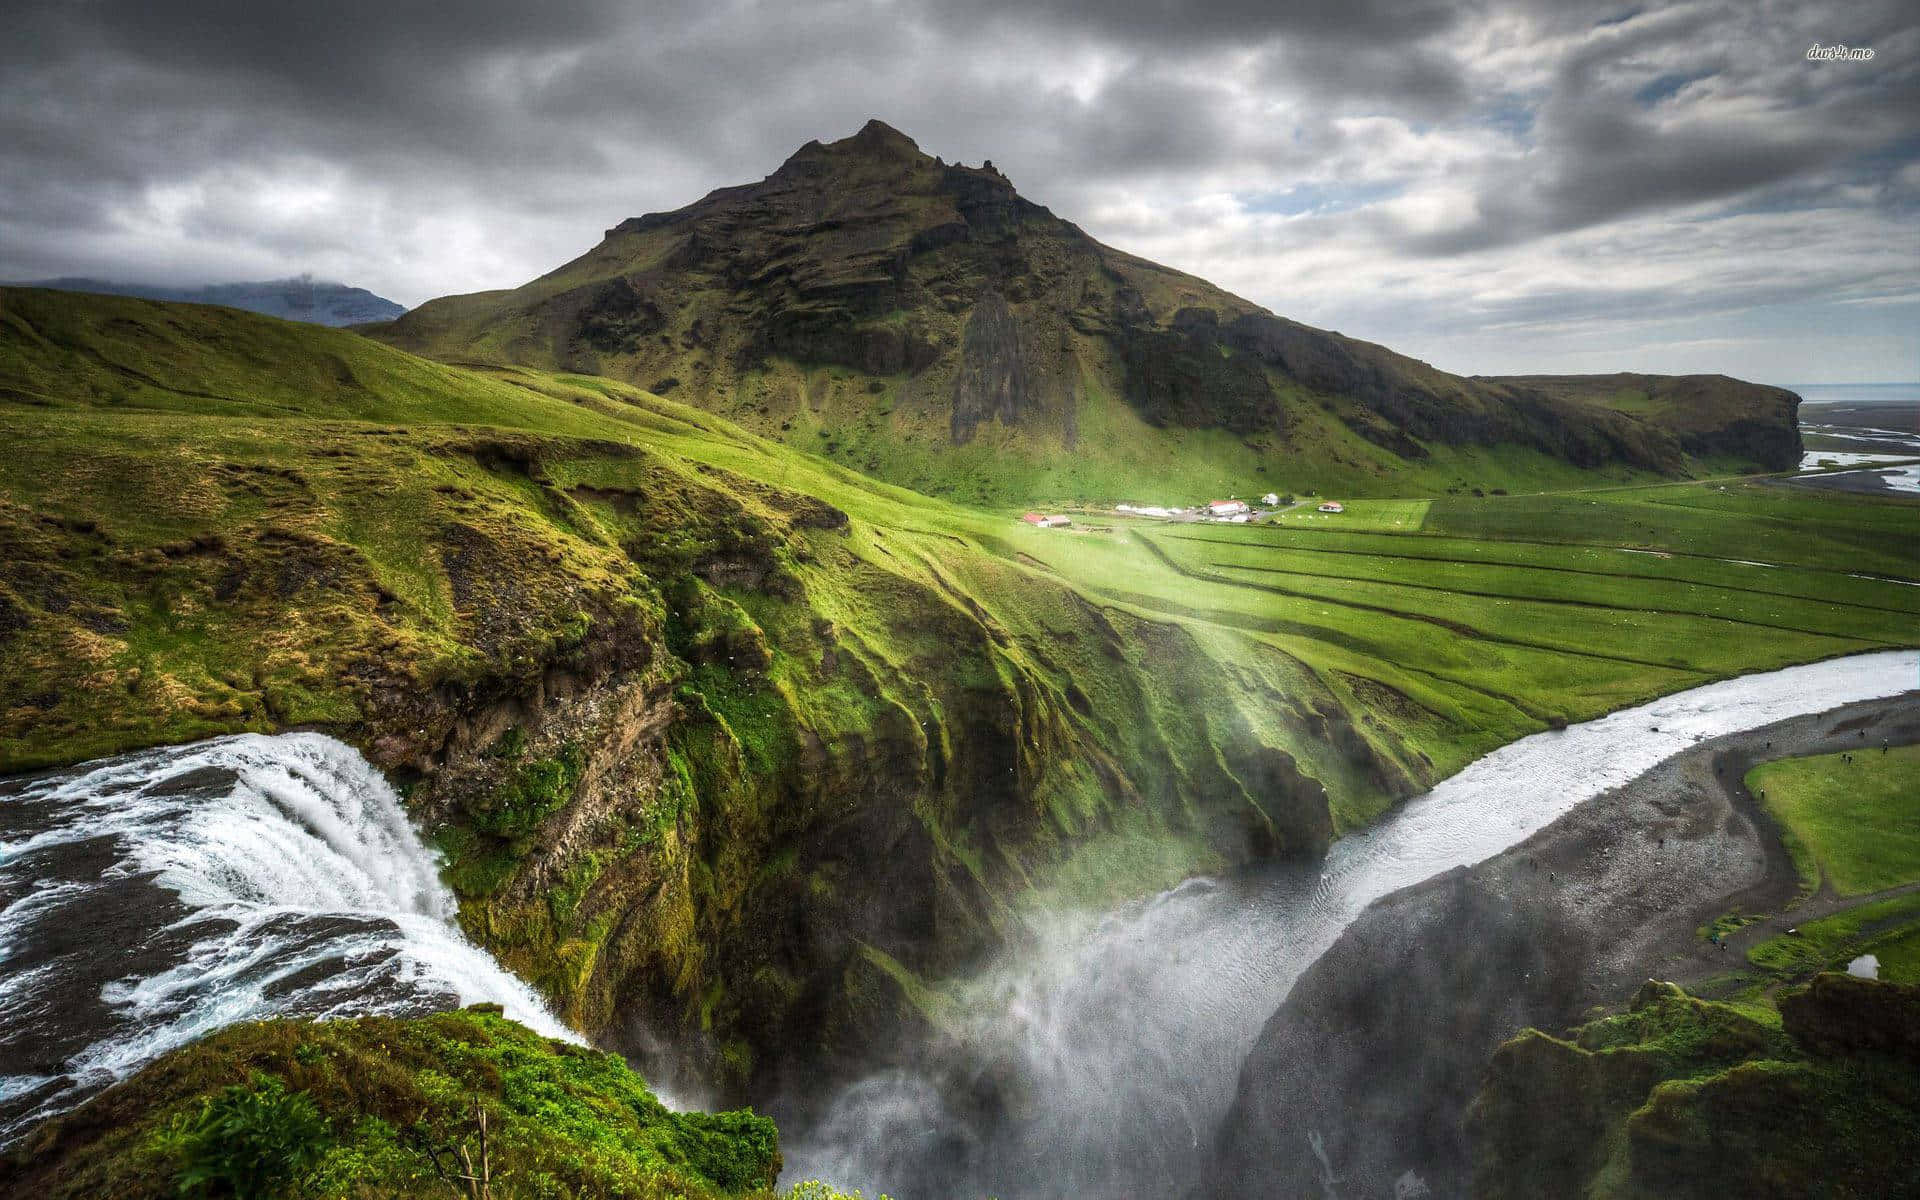 Tag på en rejse ud over horisonten og udforsk skønheden ved Island. Wallpaper